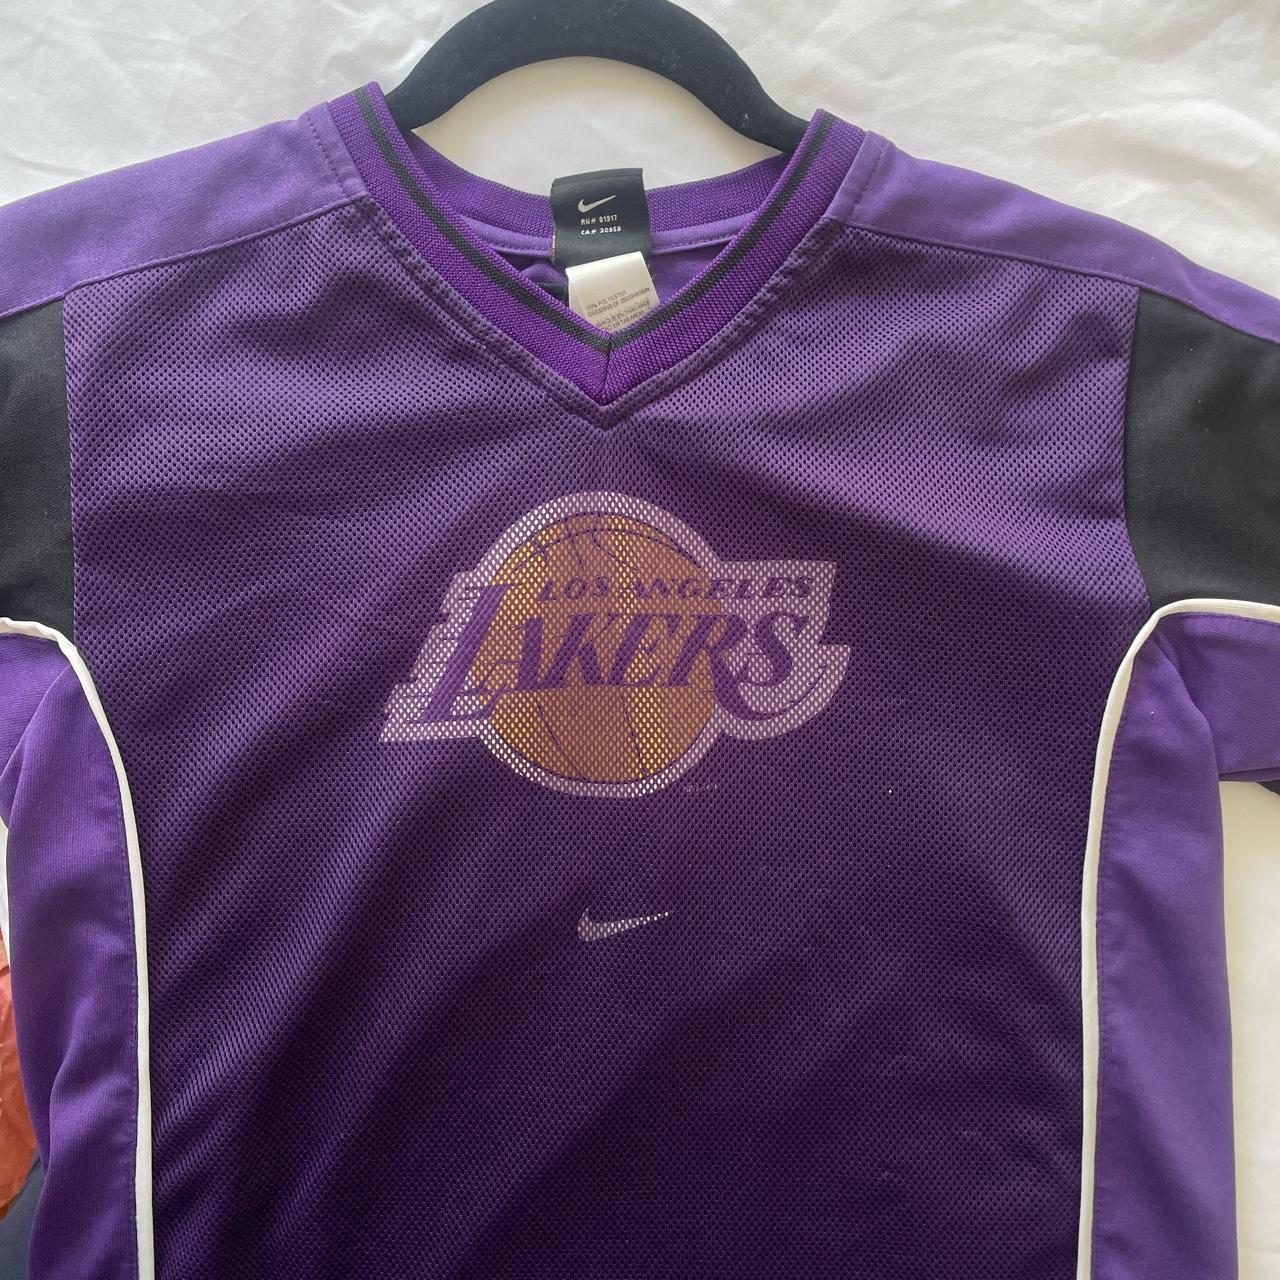 Nike Los Angeles Lakers Vintage Warm Up - Depop